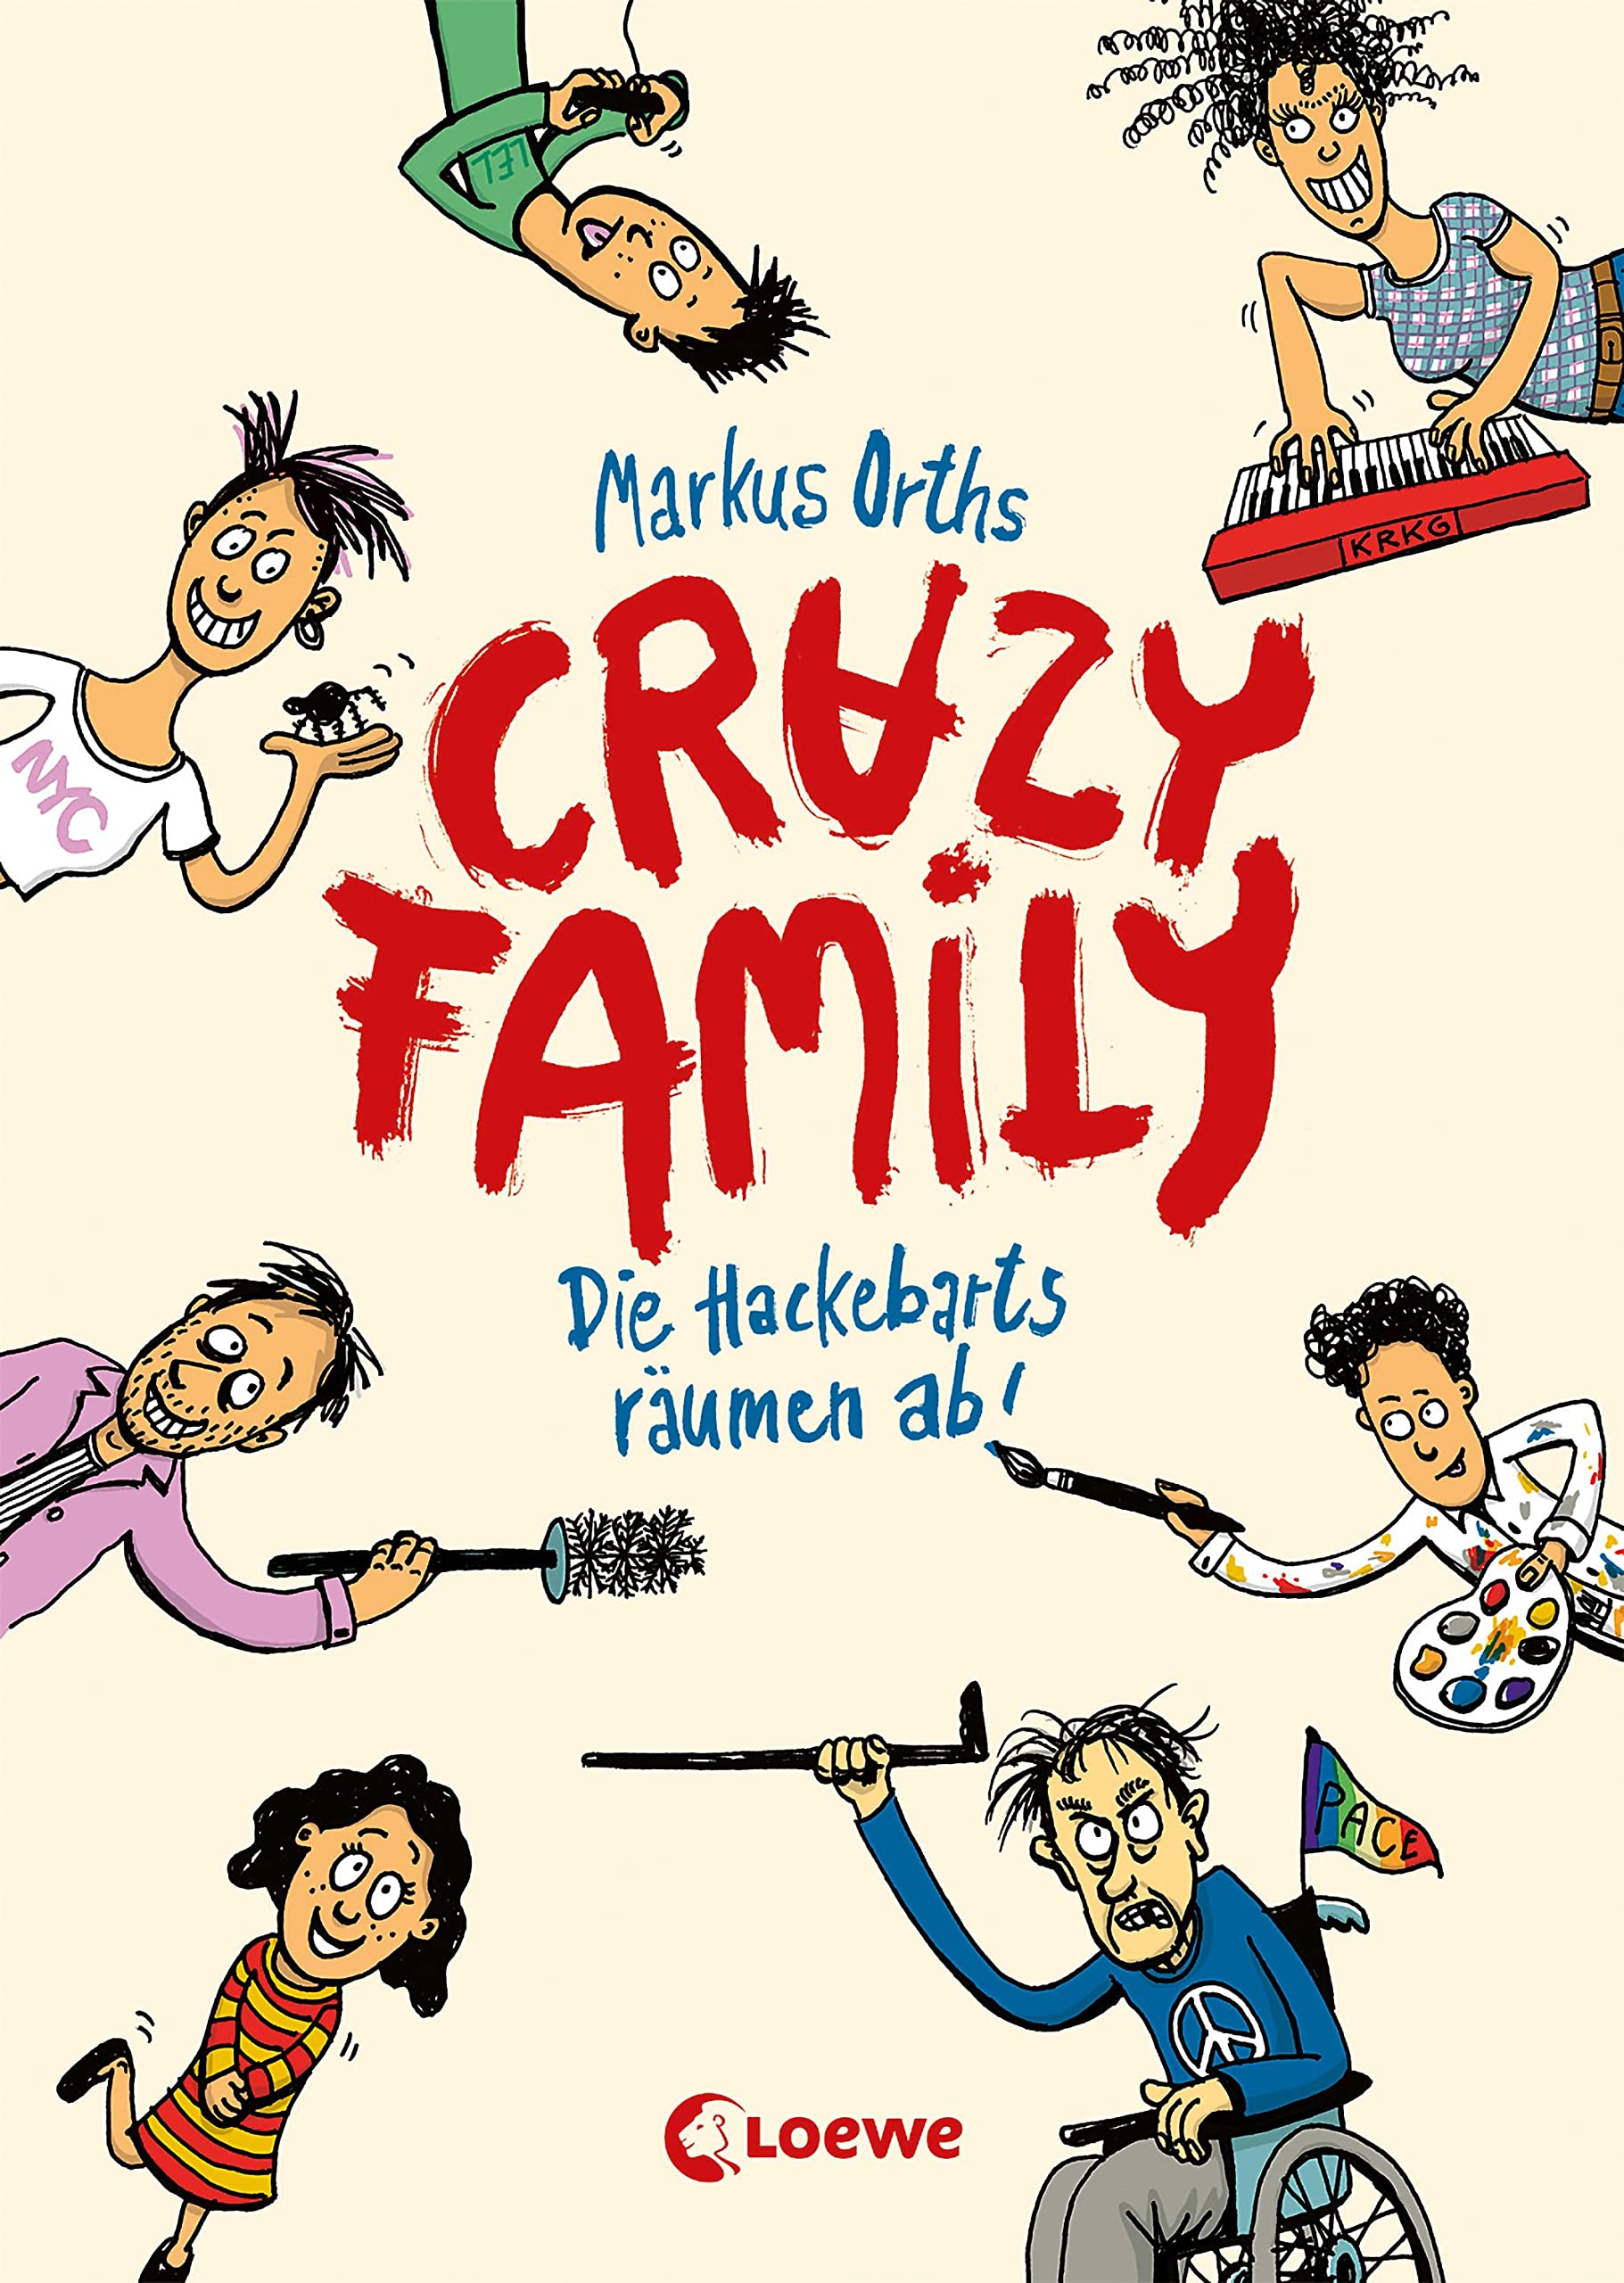 Orths, Markus: Crazy Family. Die Hackebarts räumen ab!